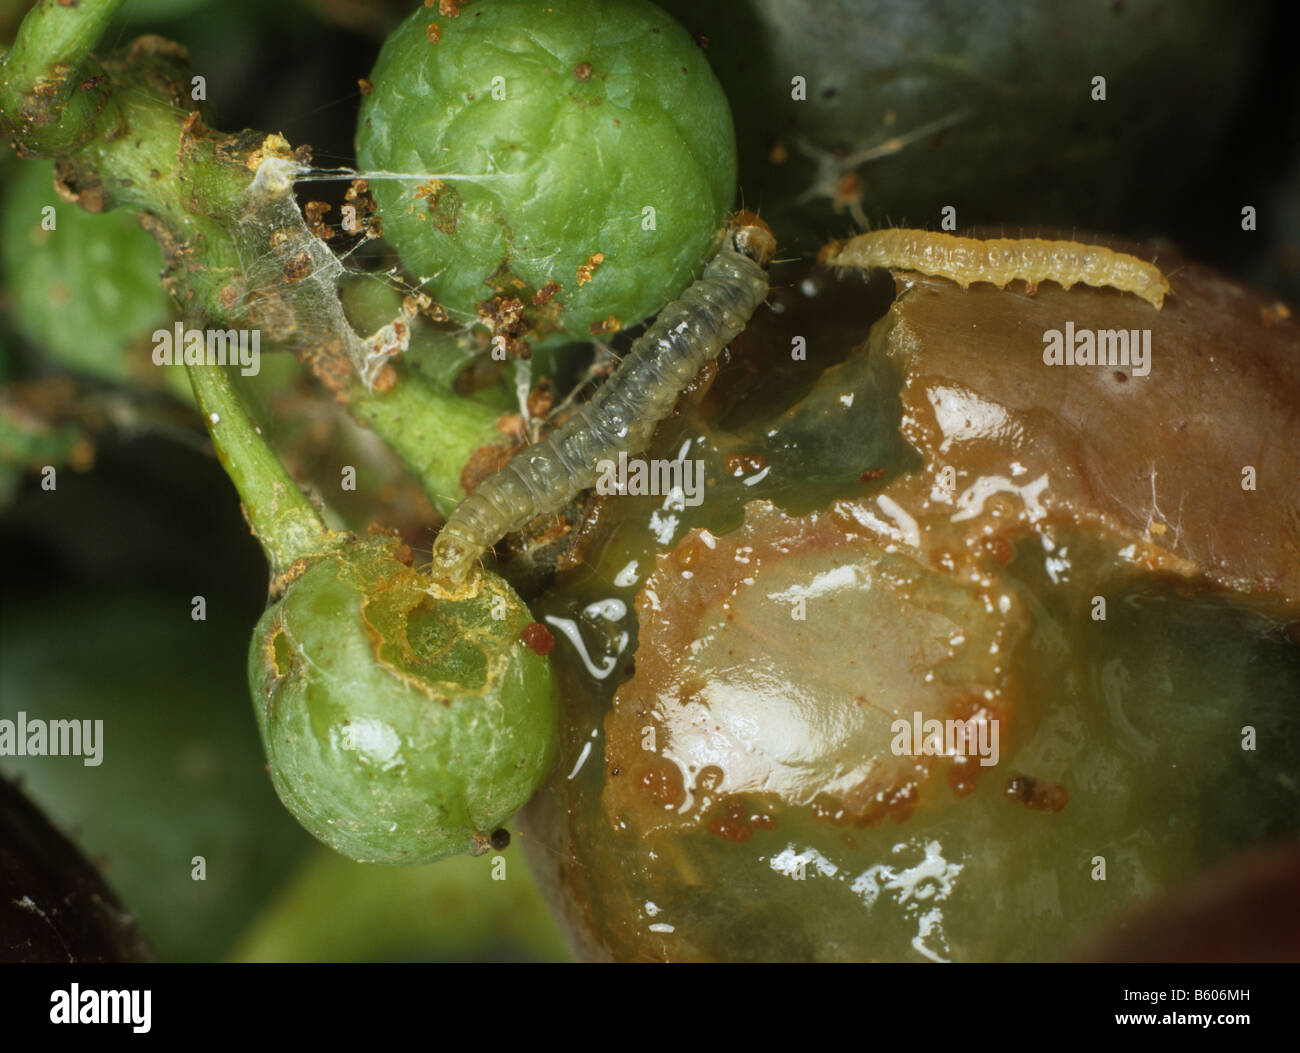 La tordeuse de la vigne européenne Lobesia botrana chenilles sur raisin endommagé Banque D'Images